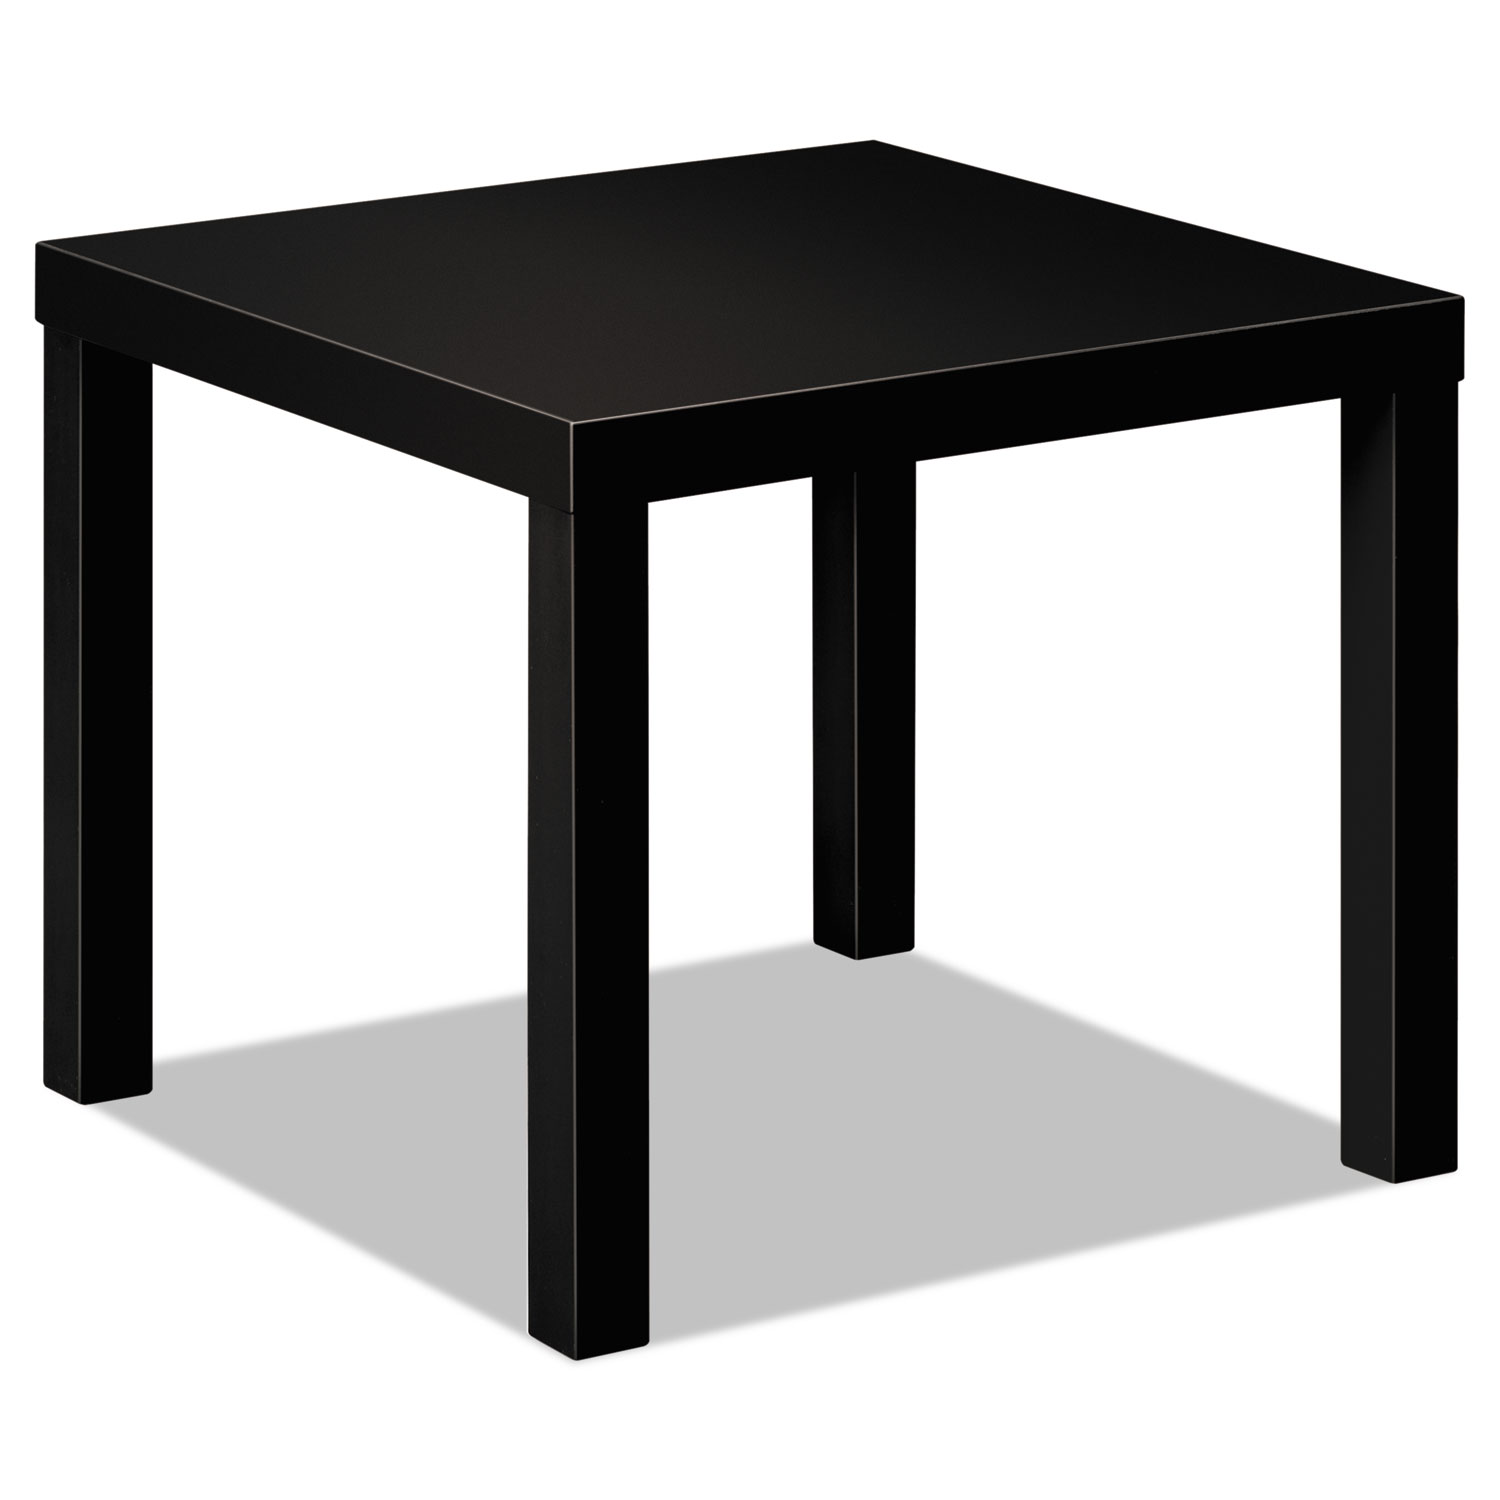  HON HBLH3170.P Laminate Occasional Table, 24w x 24d x 20h, Black (BSXBLH3170P) 